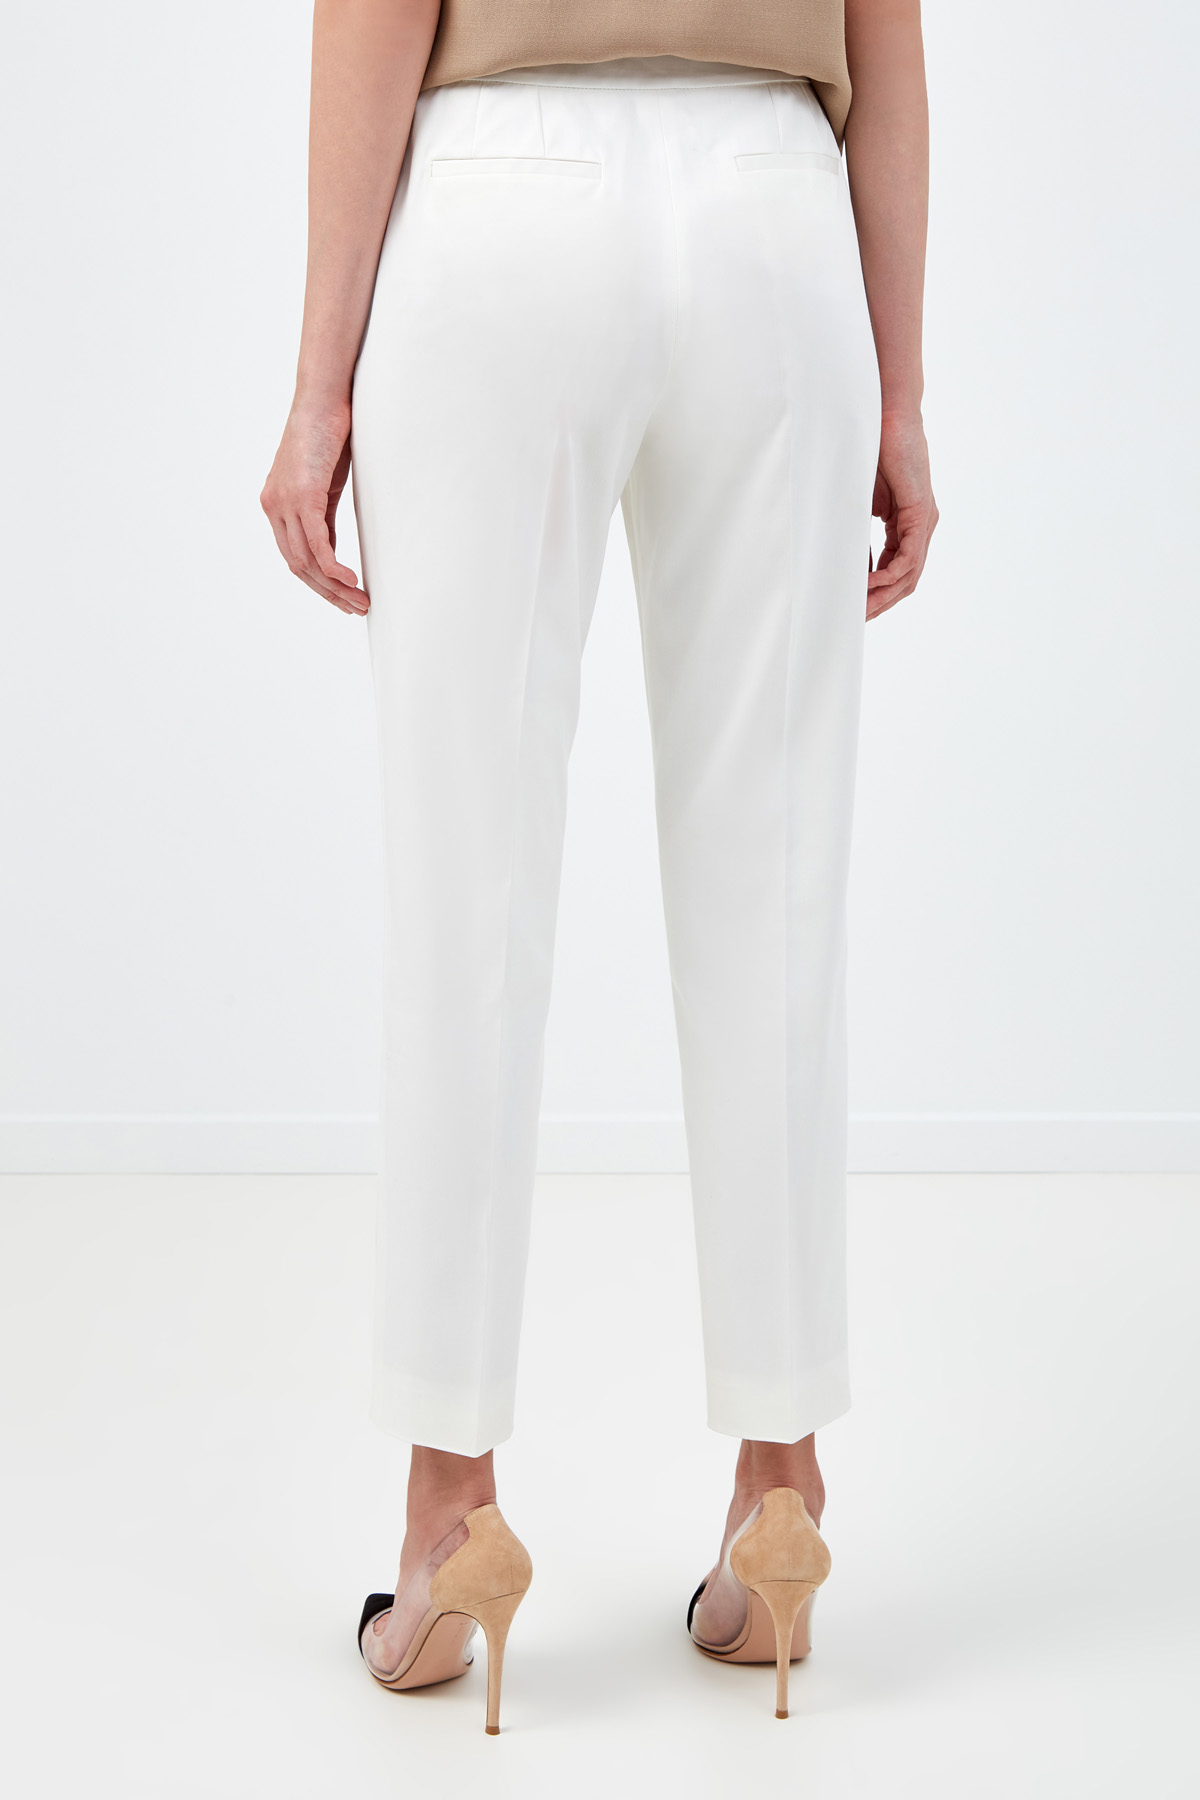 Зауженные белые брюки из гладкого хлопка AGNONA, цвет белый, размер 44;38;42 - фото 4